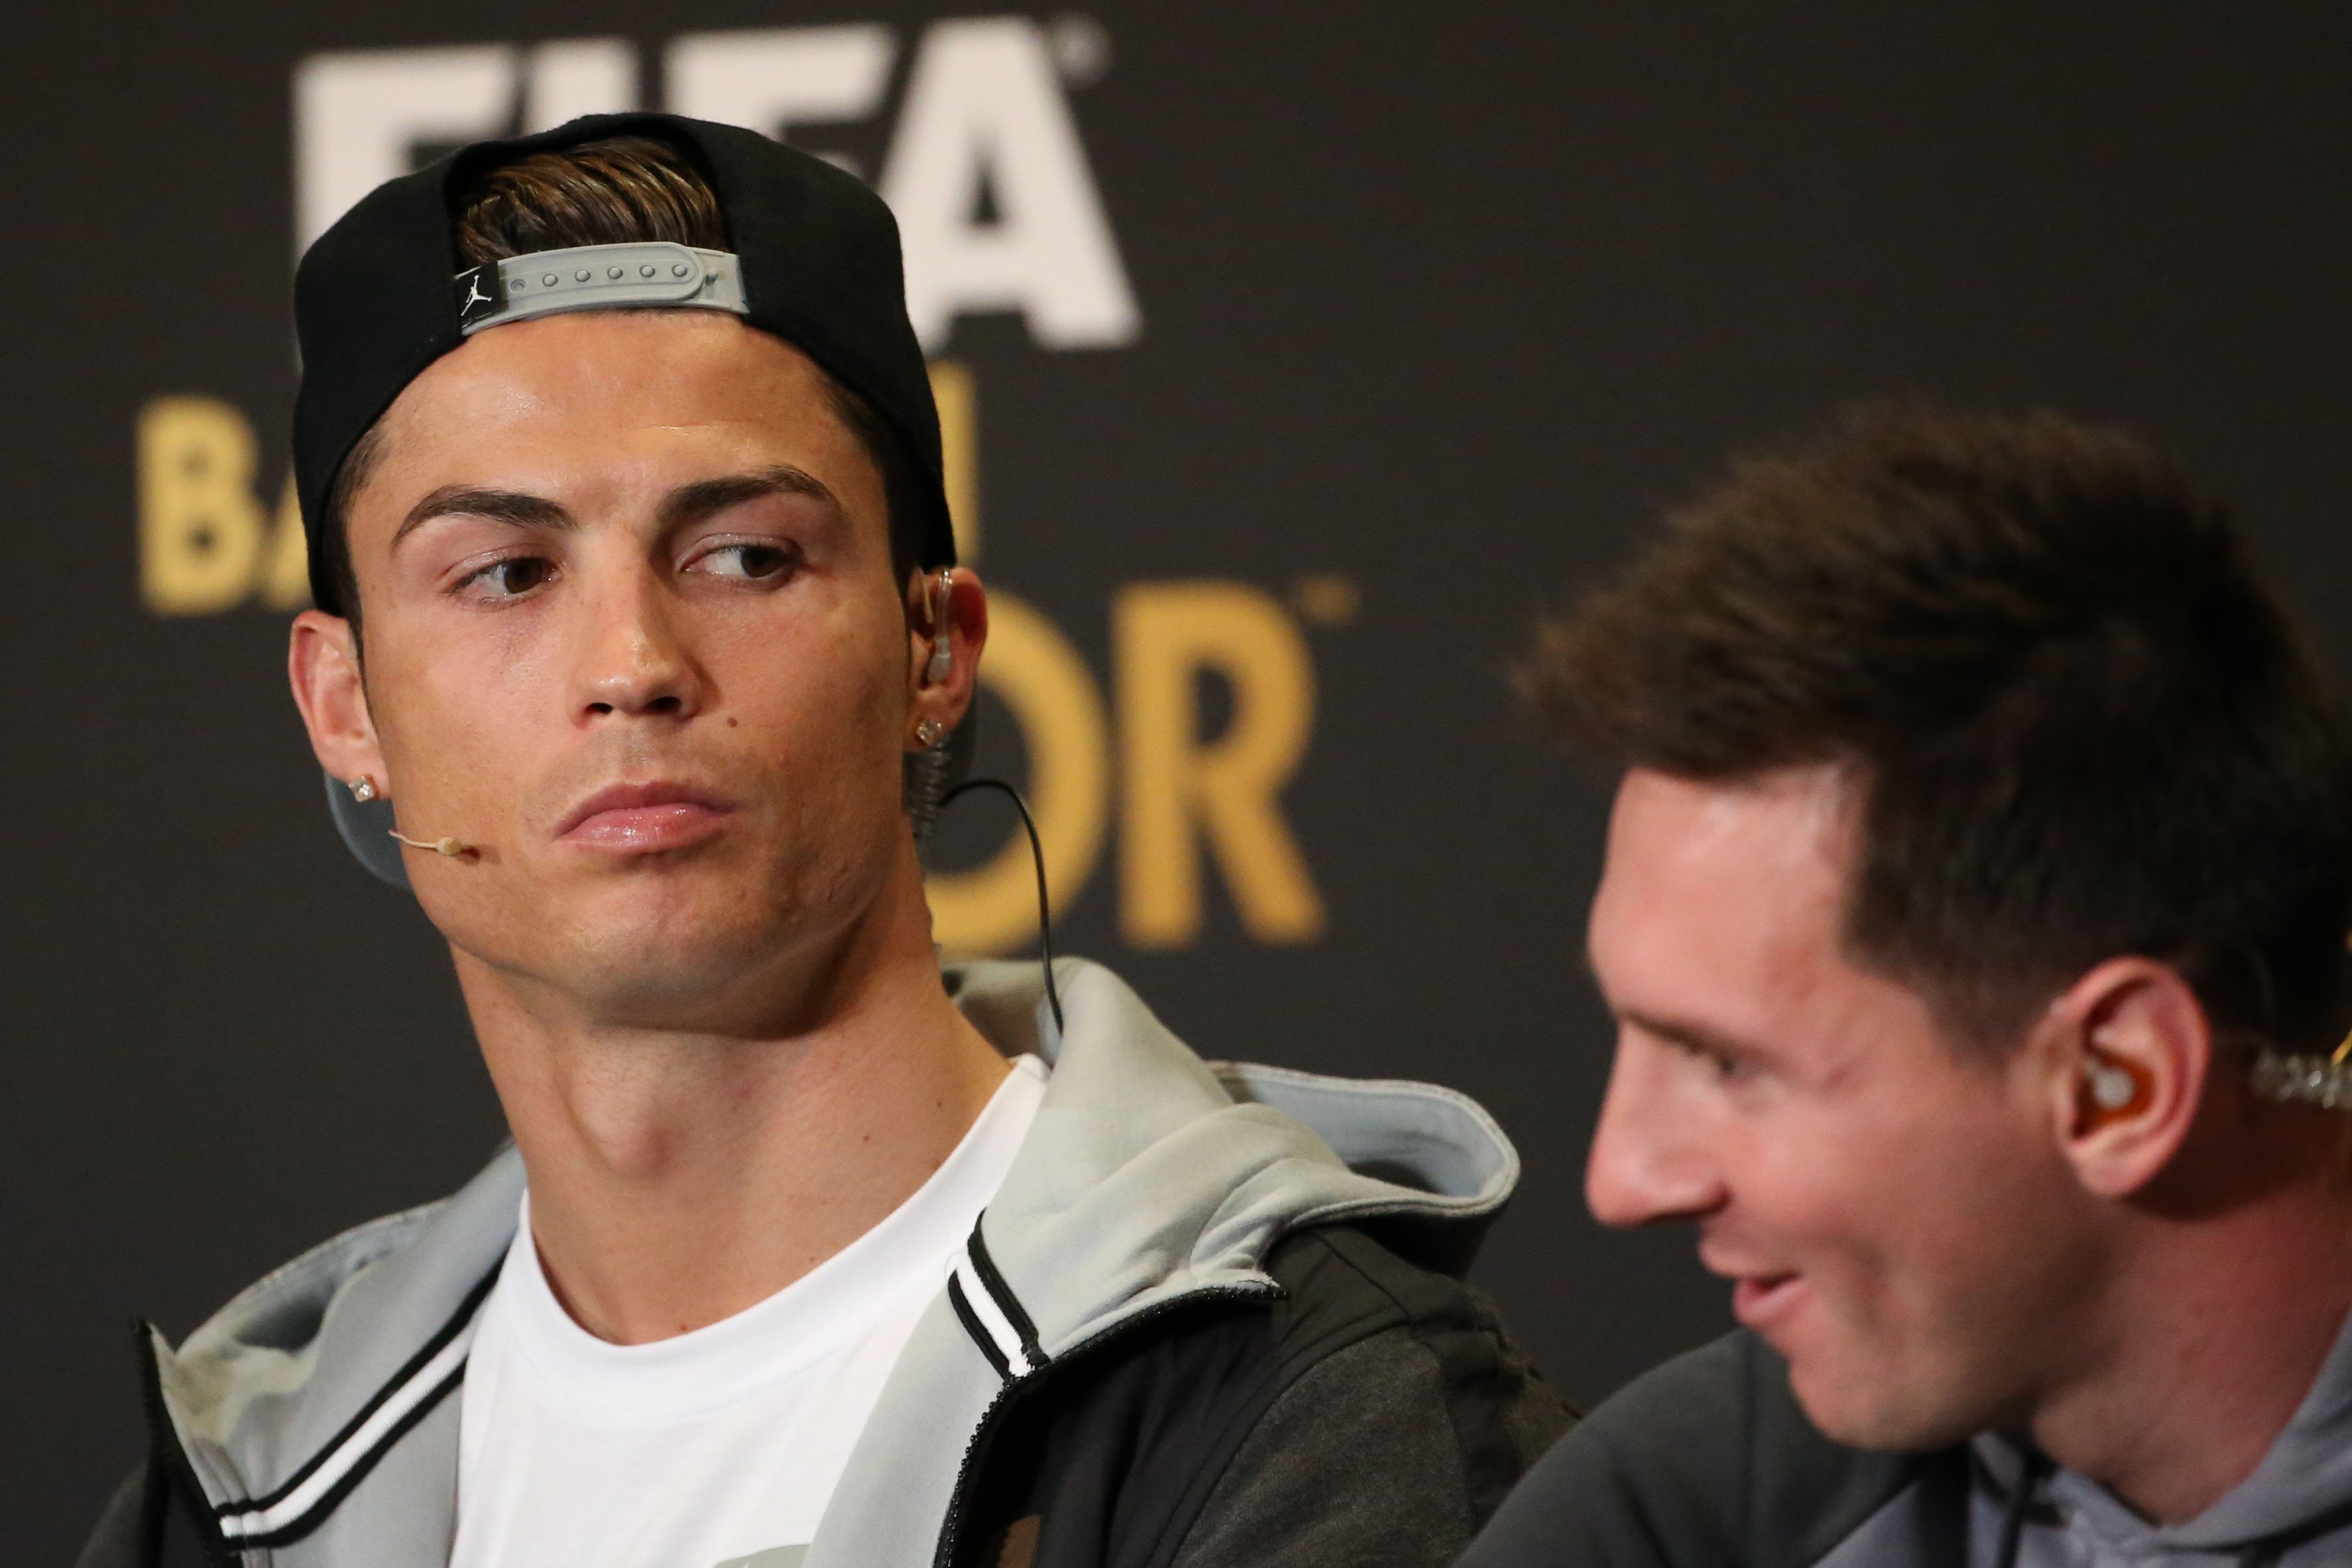 Hur är egentligen relationen mellan Ronaldo och Messi?